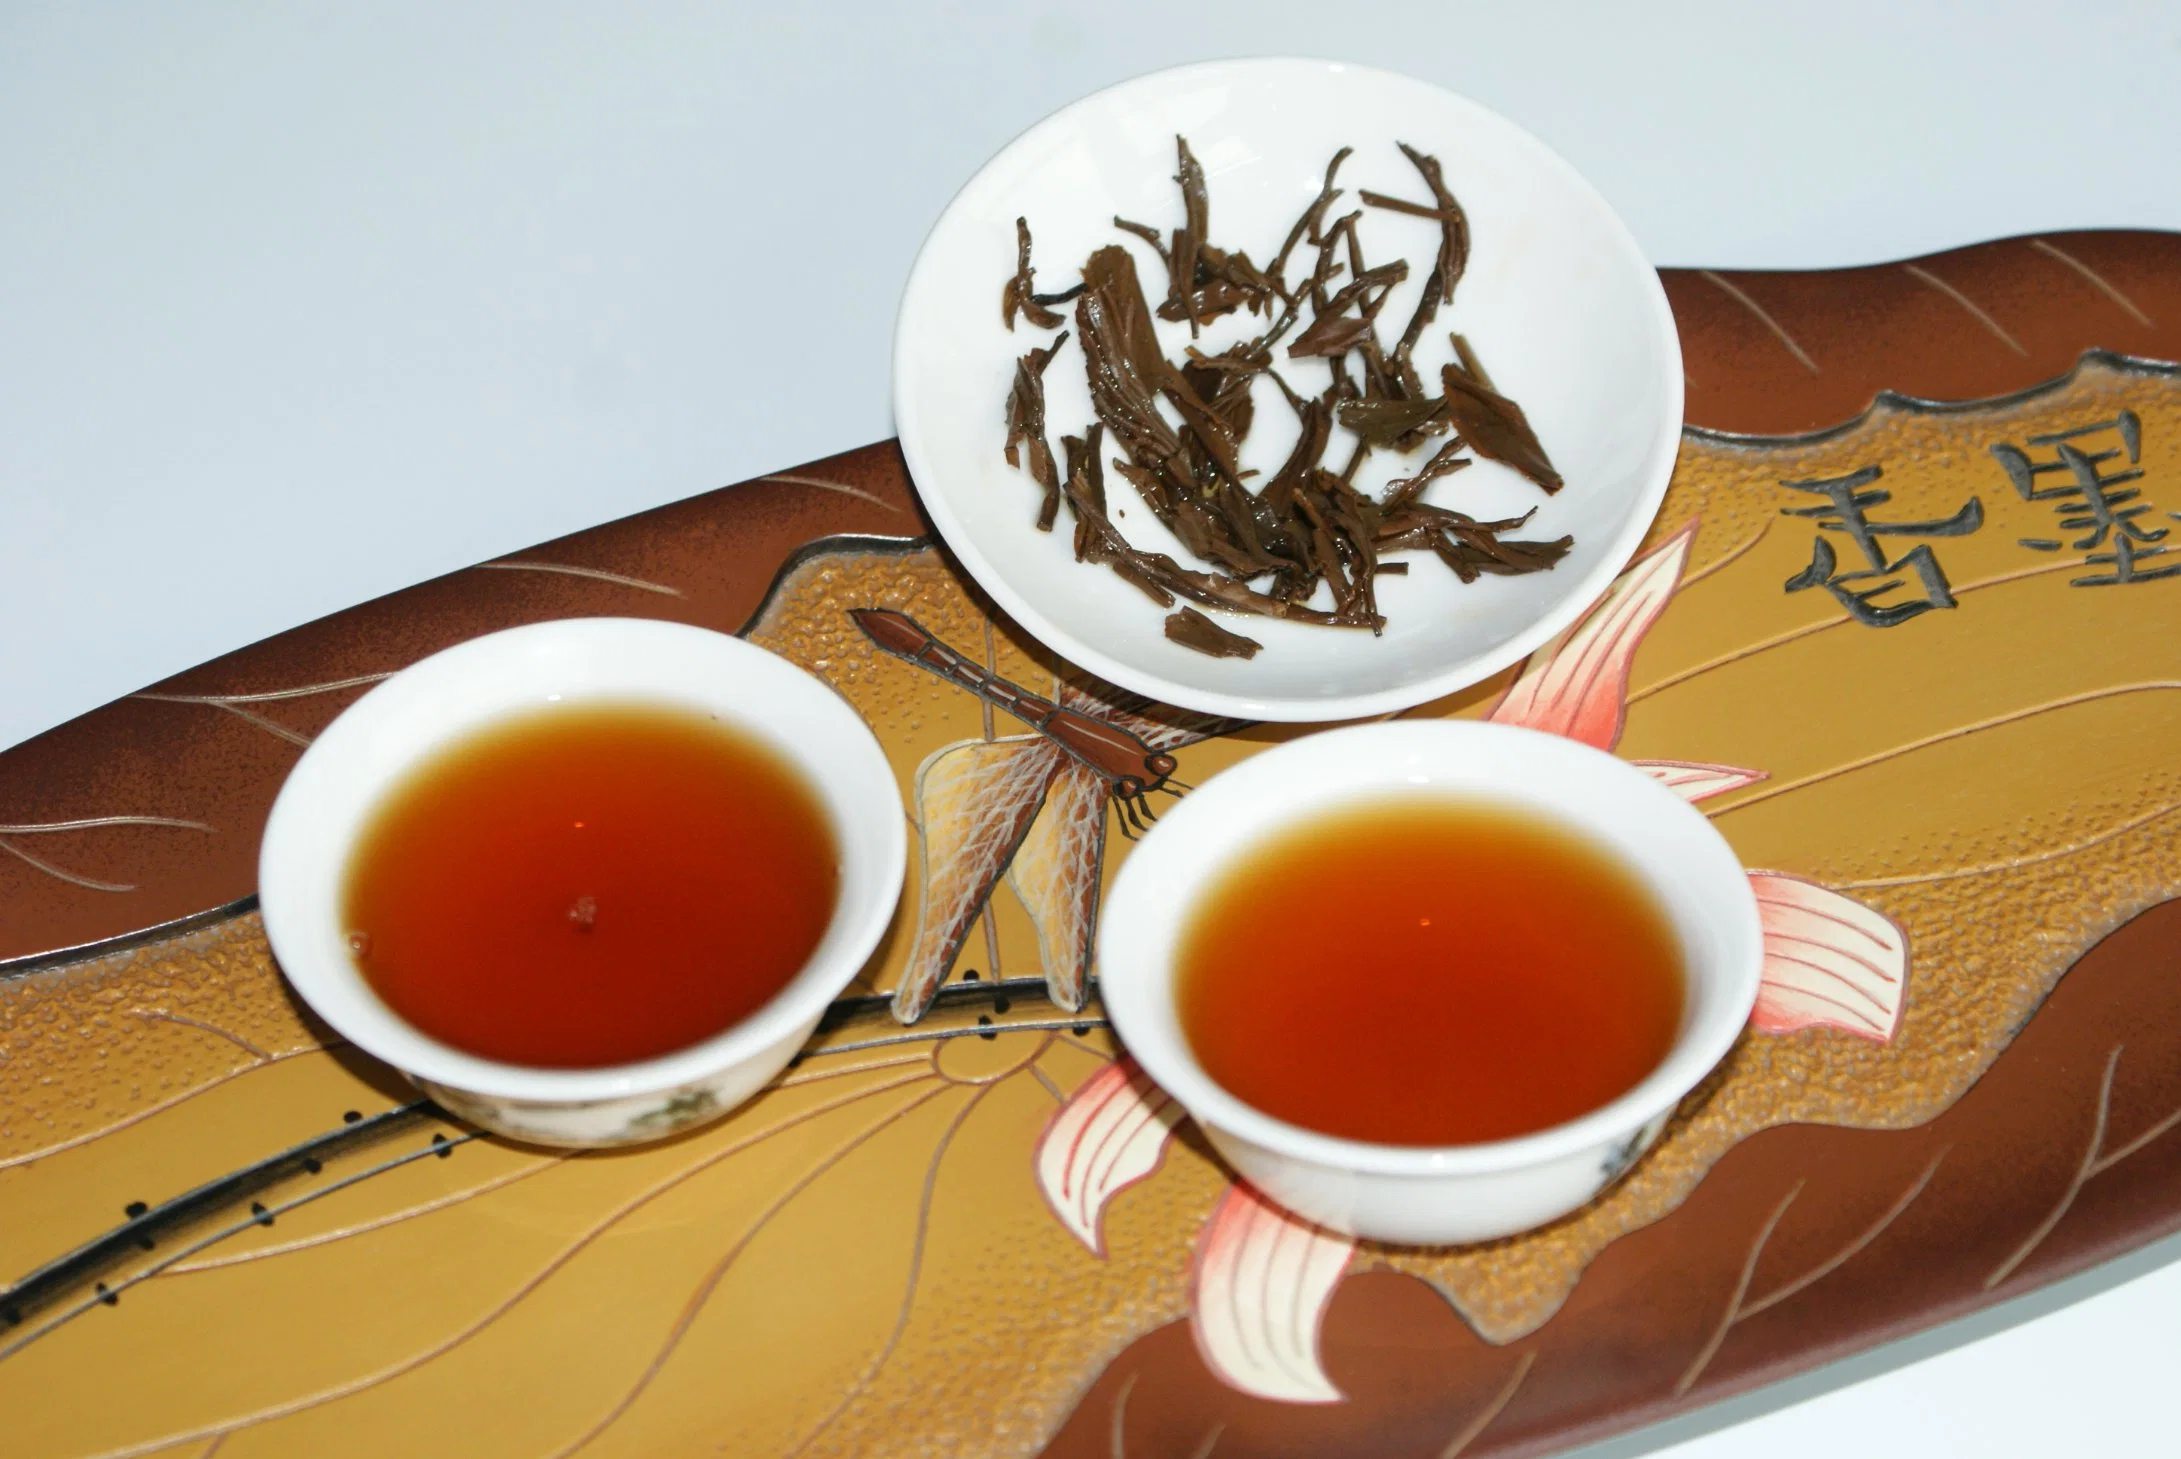 Chinese Premium Organic Lapsang Souchong thé noir fermenté